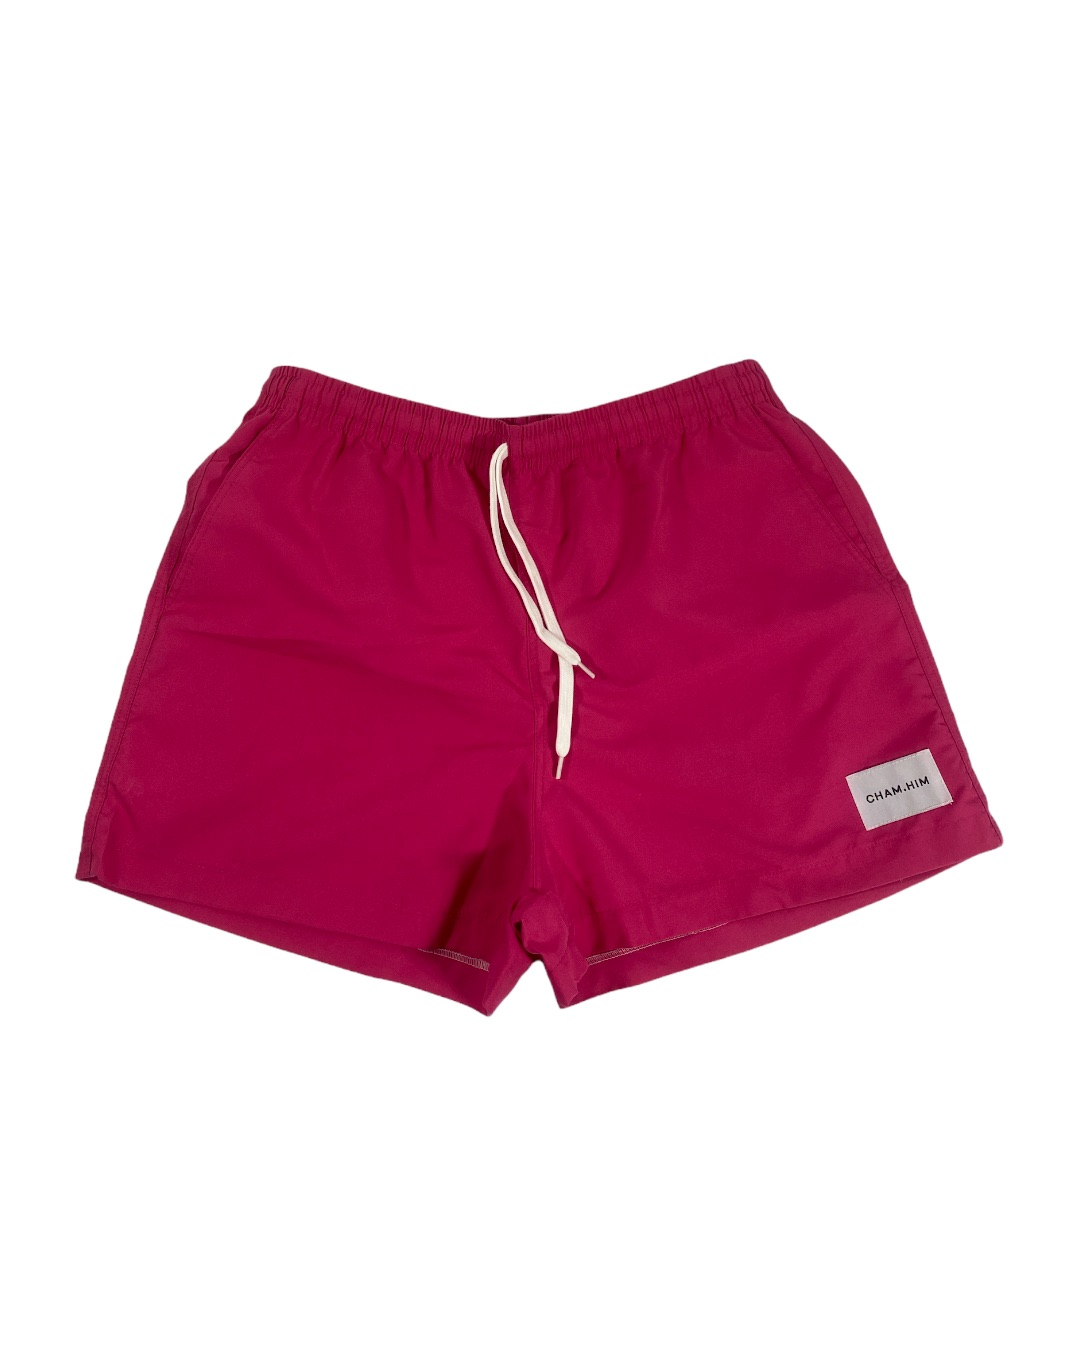 Sea Shorts (Deep Pink)